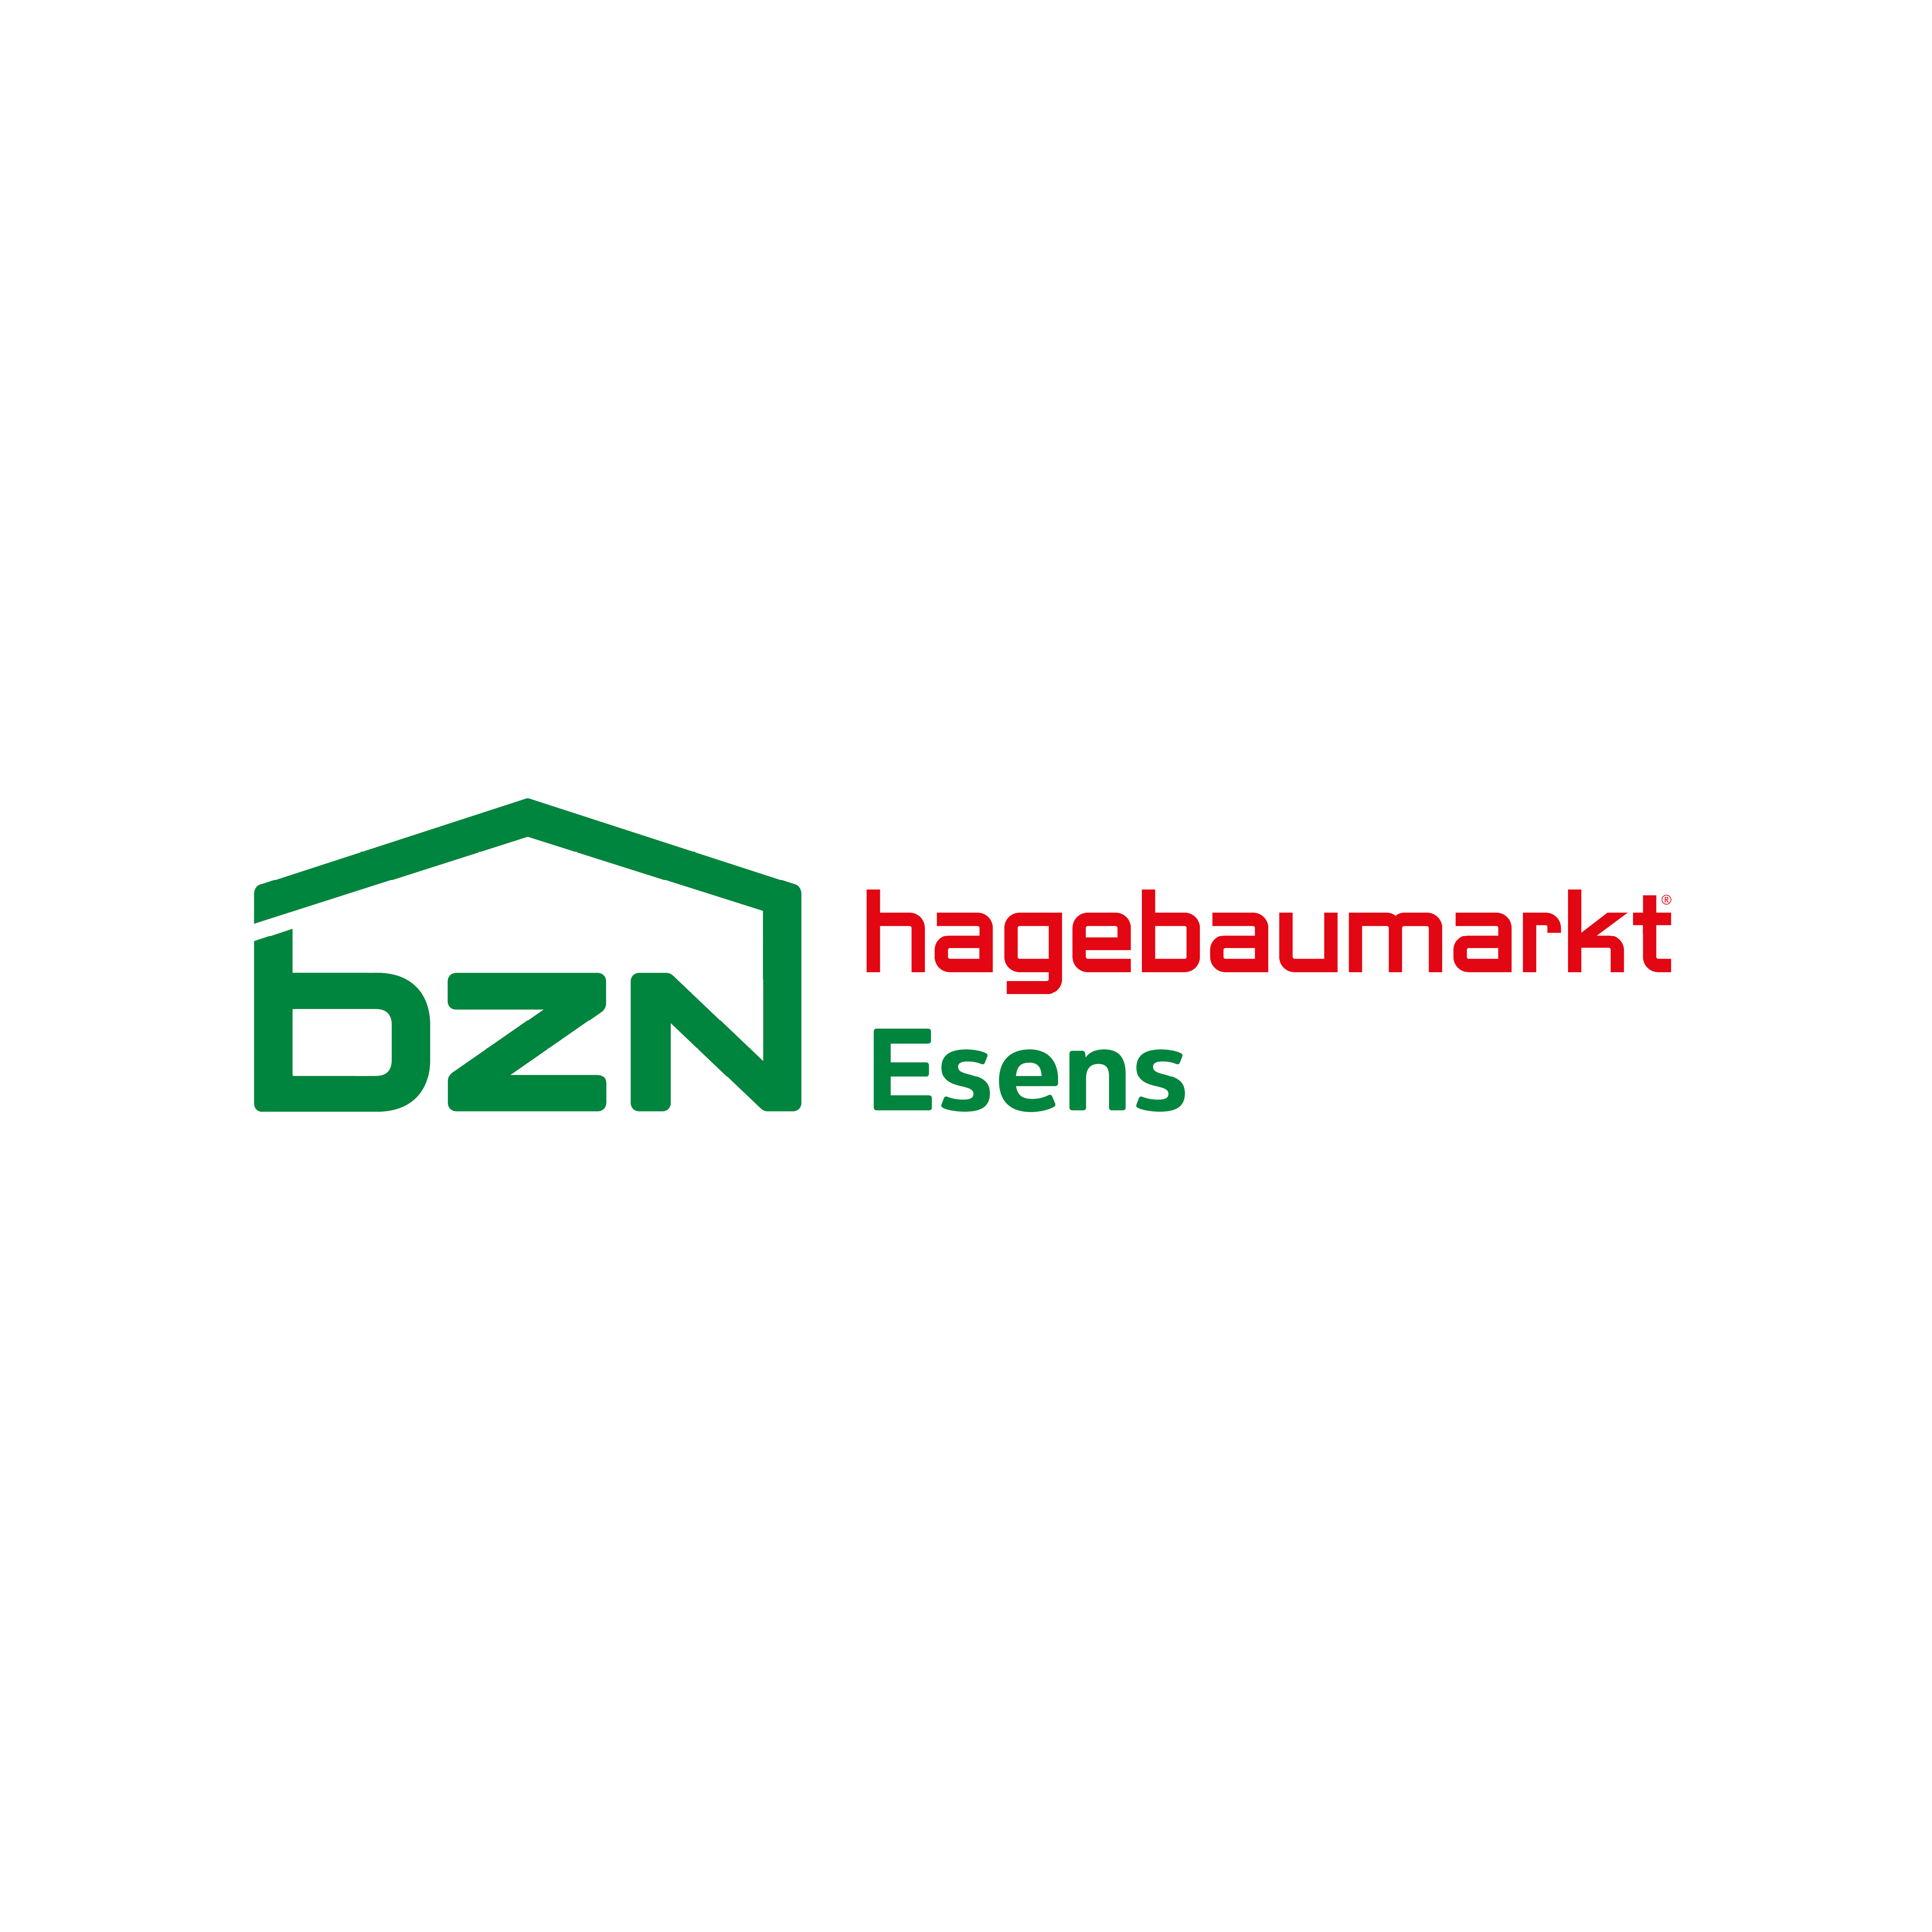 Logo BZN Hagebaumarkt Esens GmbH & Co. KG